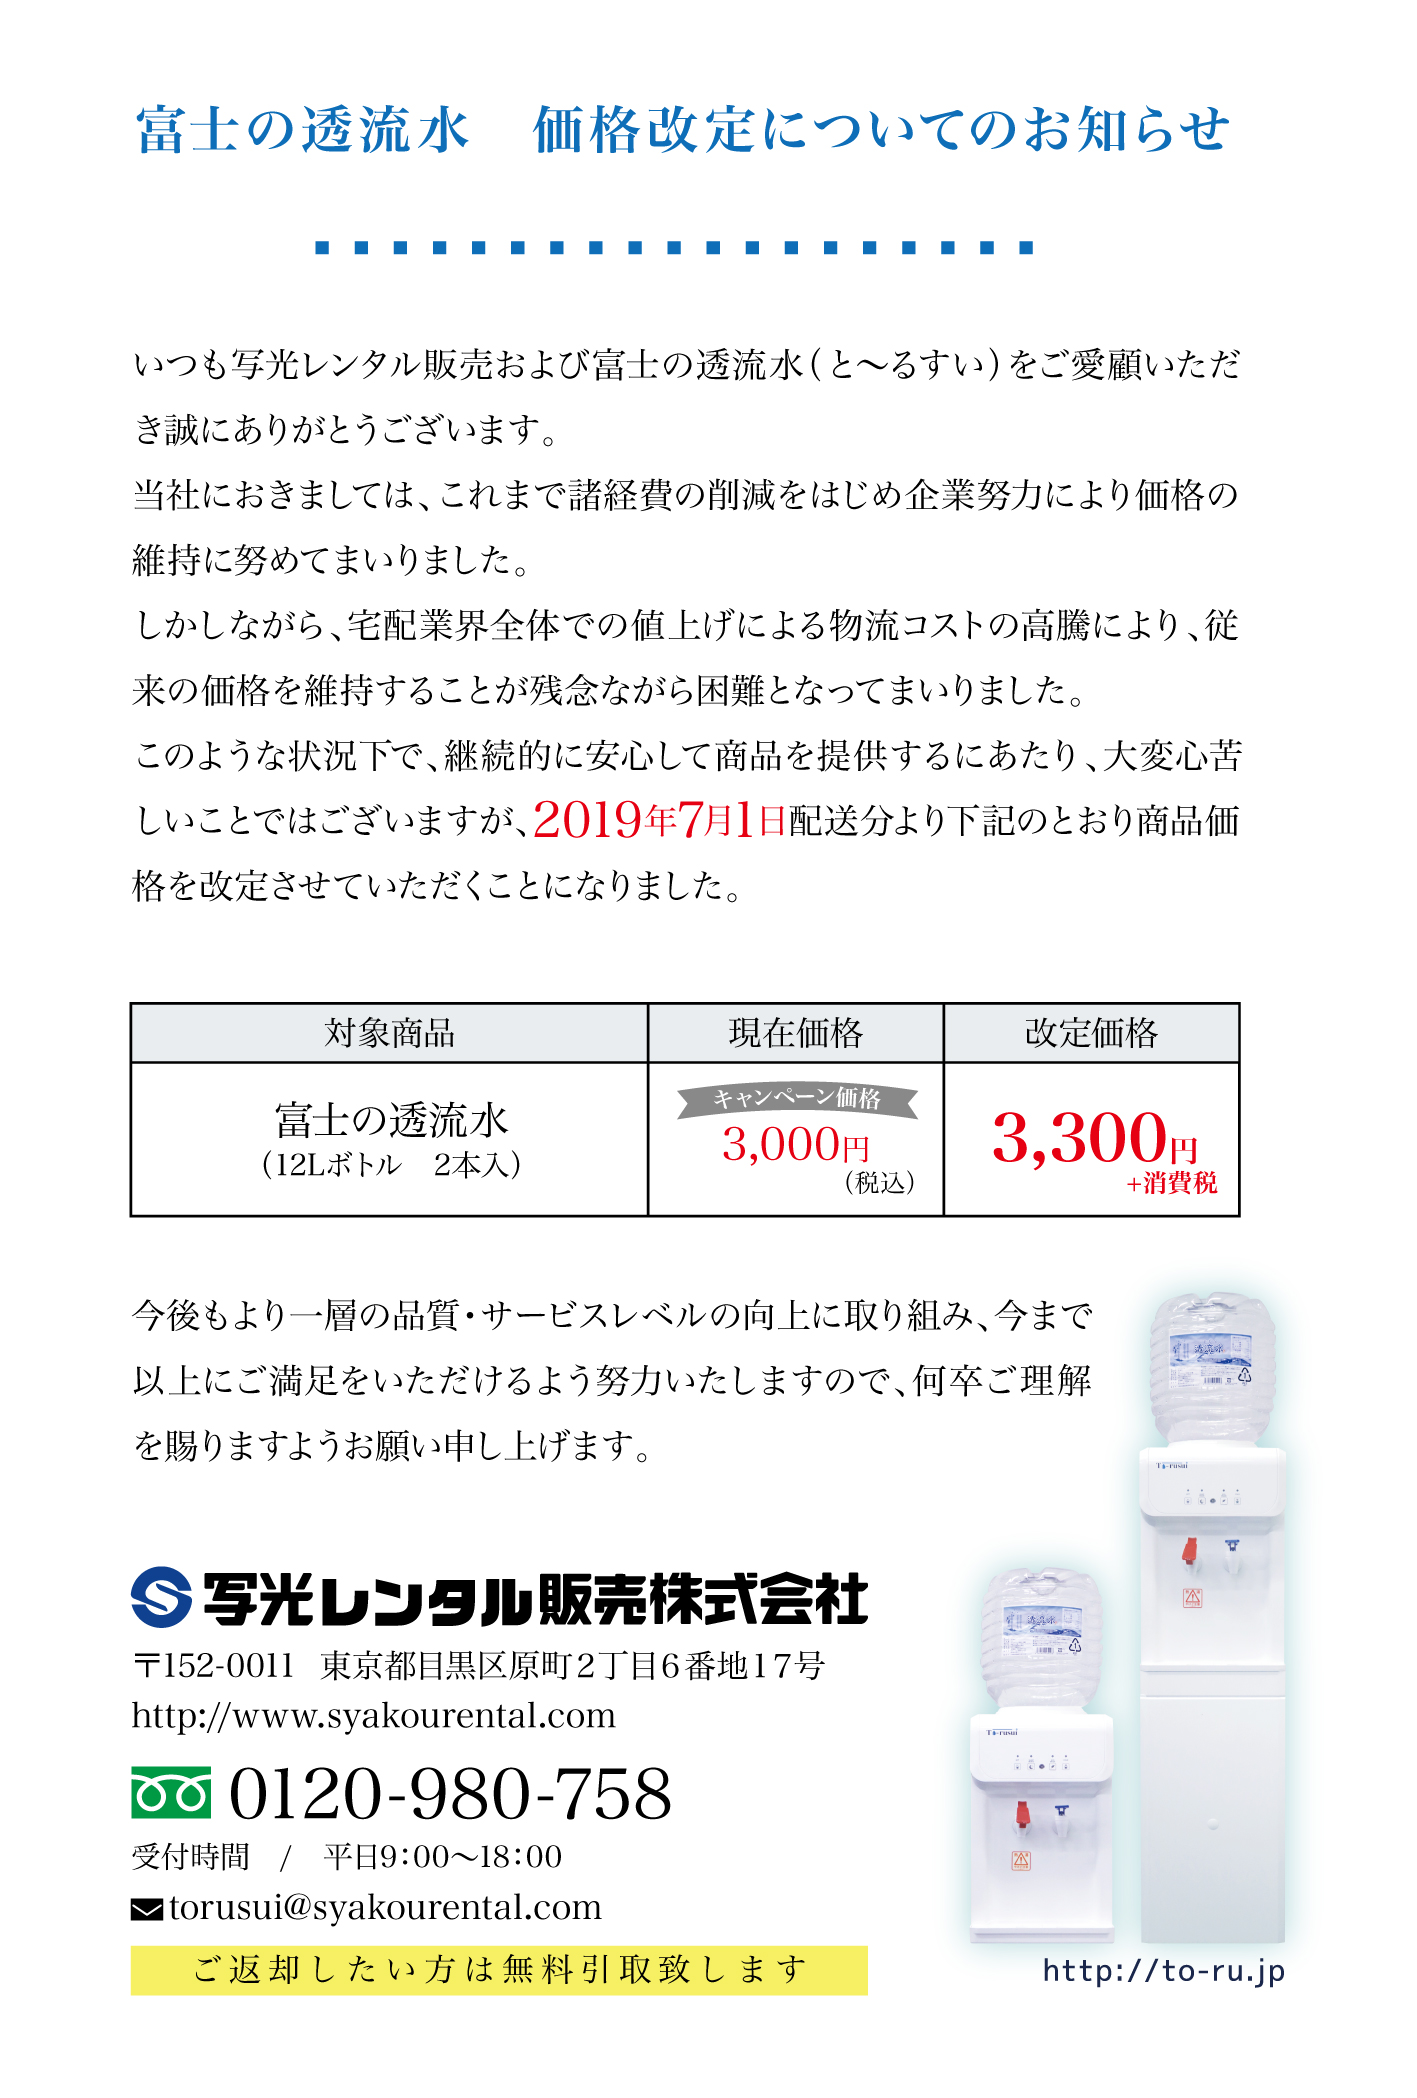 富士の透流水価格改定についてのお知らせ